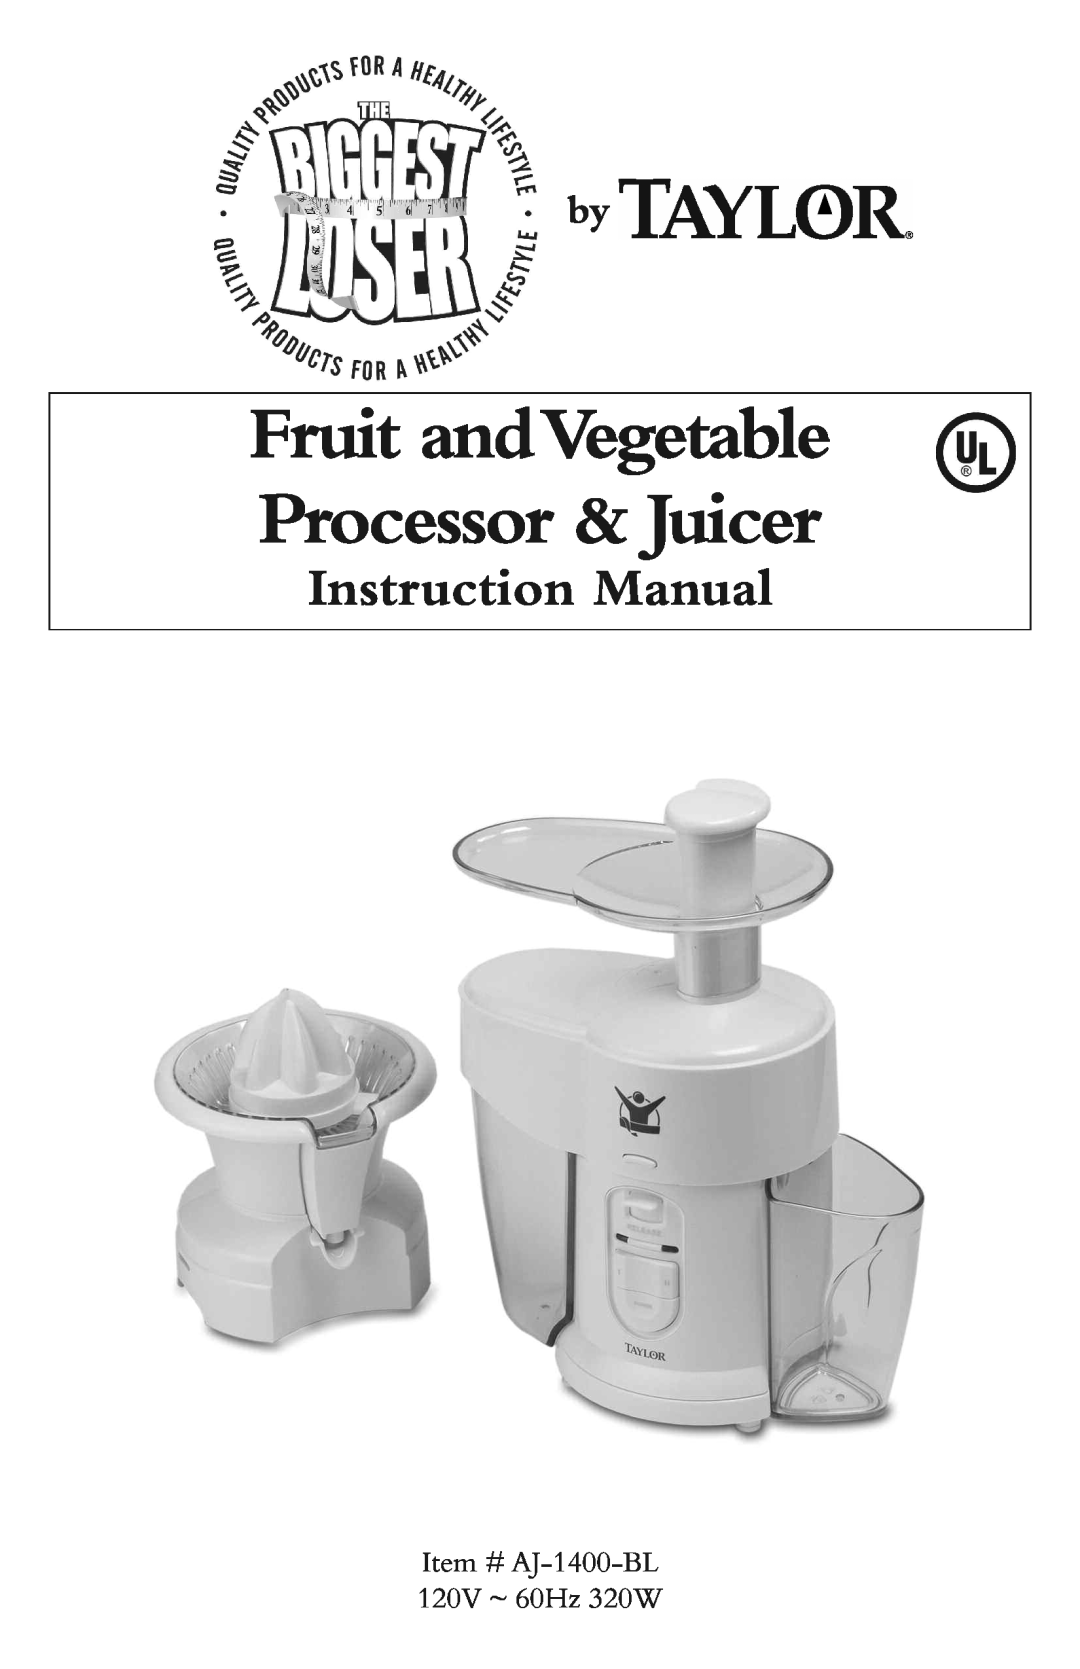 Taylor AJ-1400-BL instruction manual Fruit andVegetable Processor & Juicer 